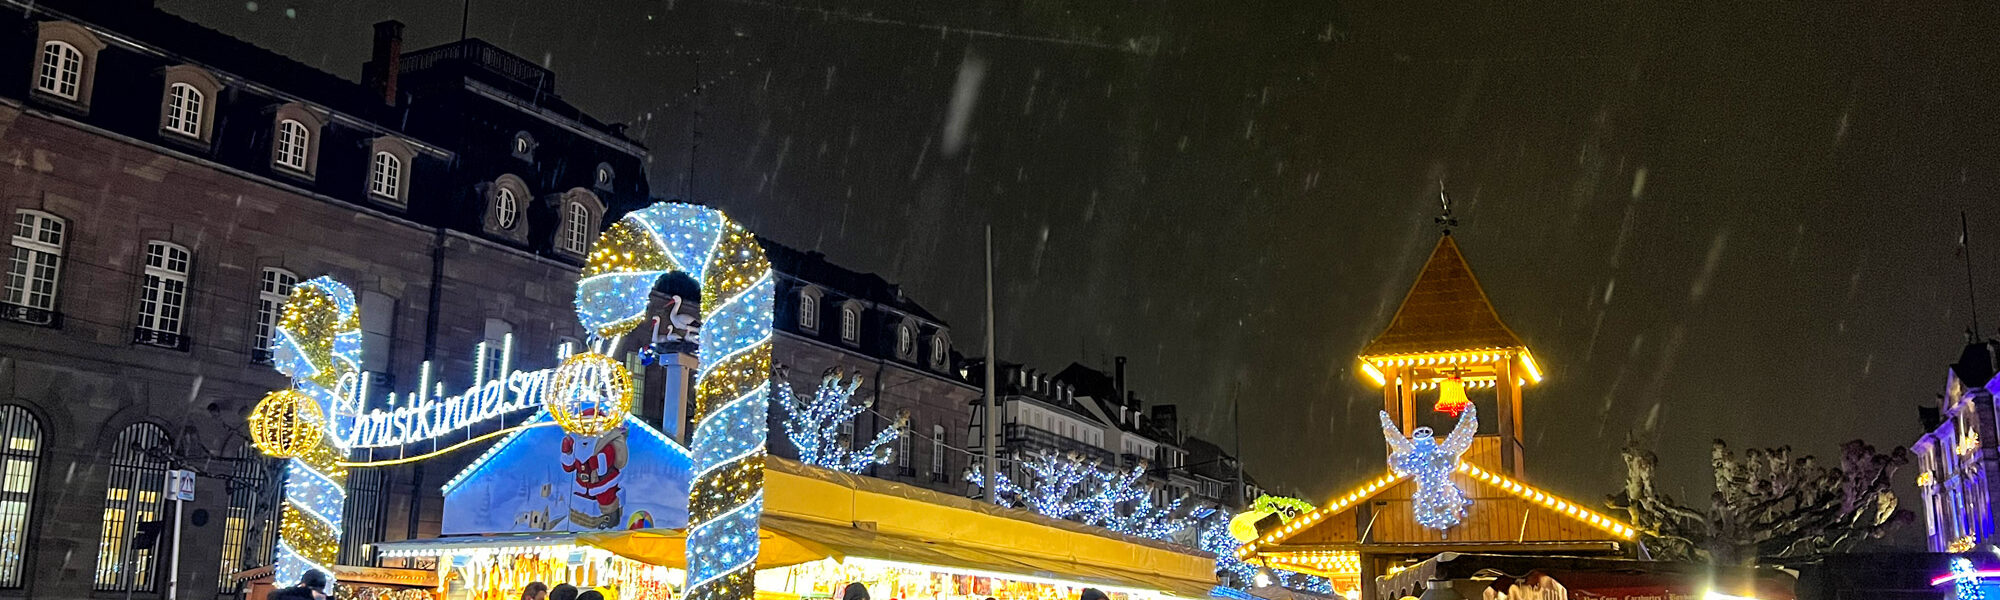 Kerstmarkt van Straatsburg in corona tijden - Frankrijk